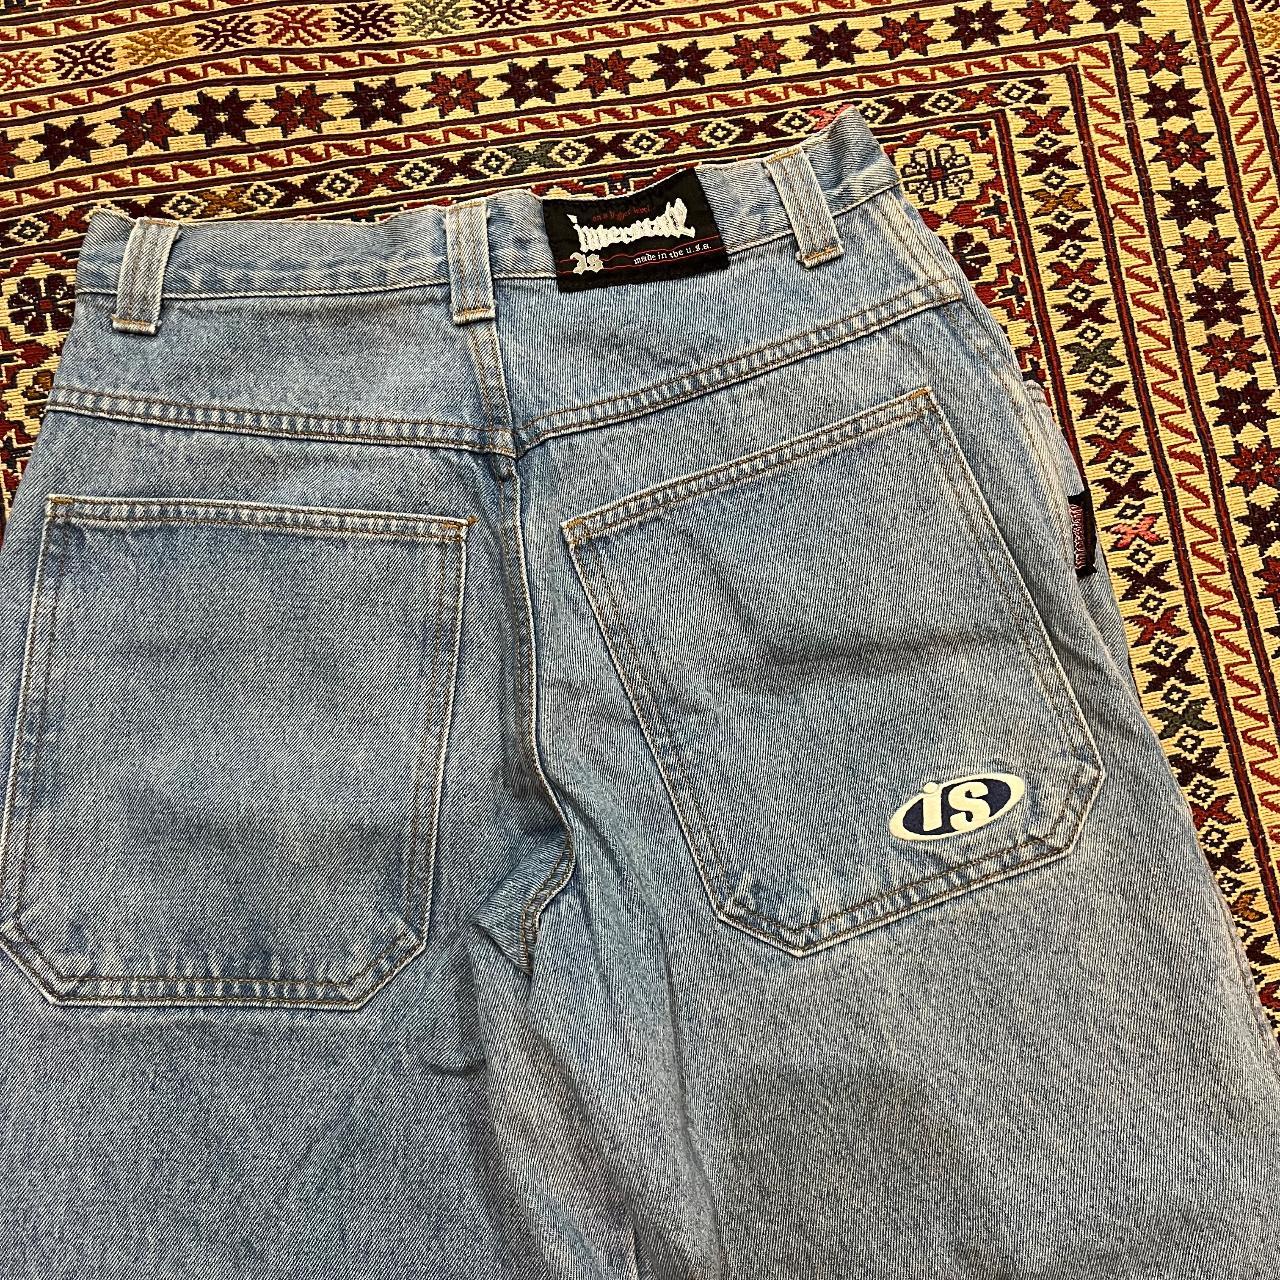 Vintage 90s Interstate Baggy Skater Jeans Medium... - Depop